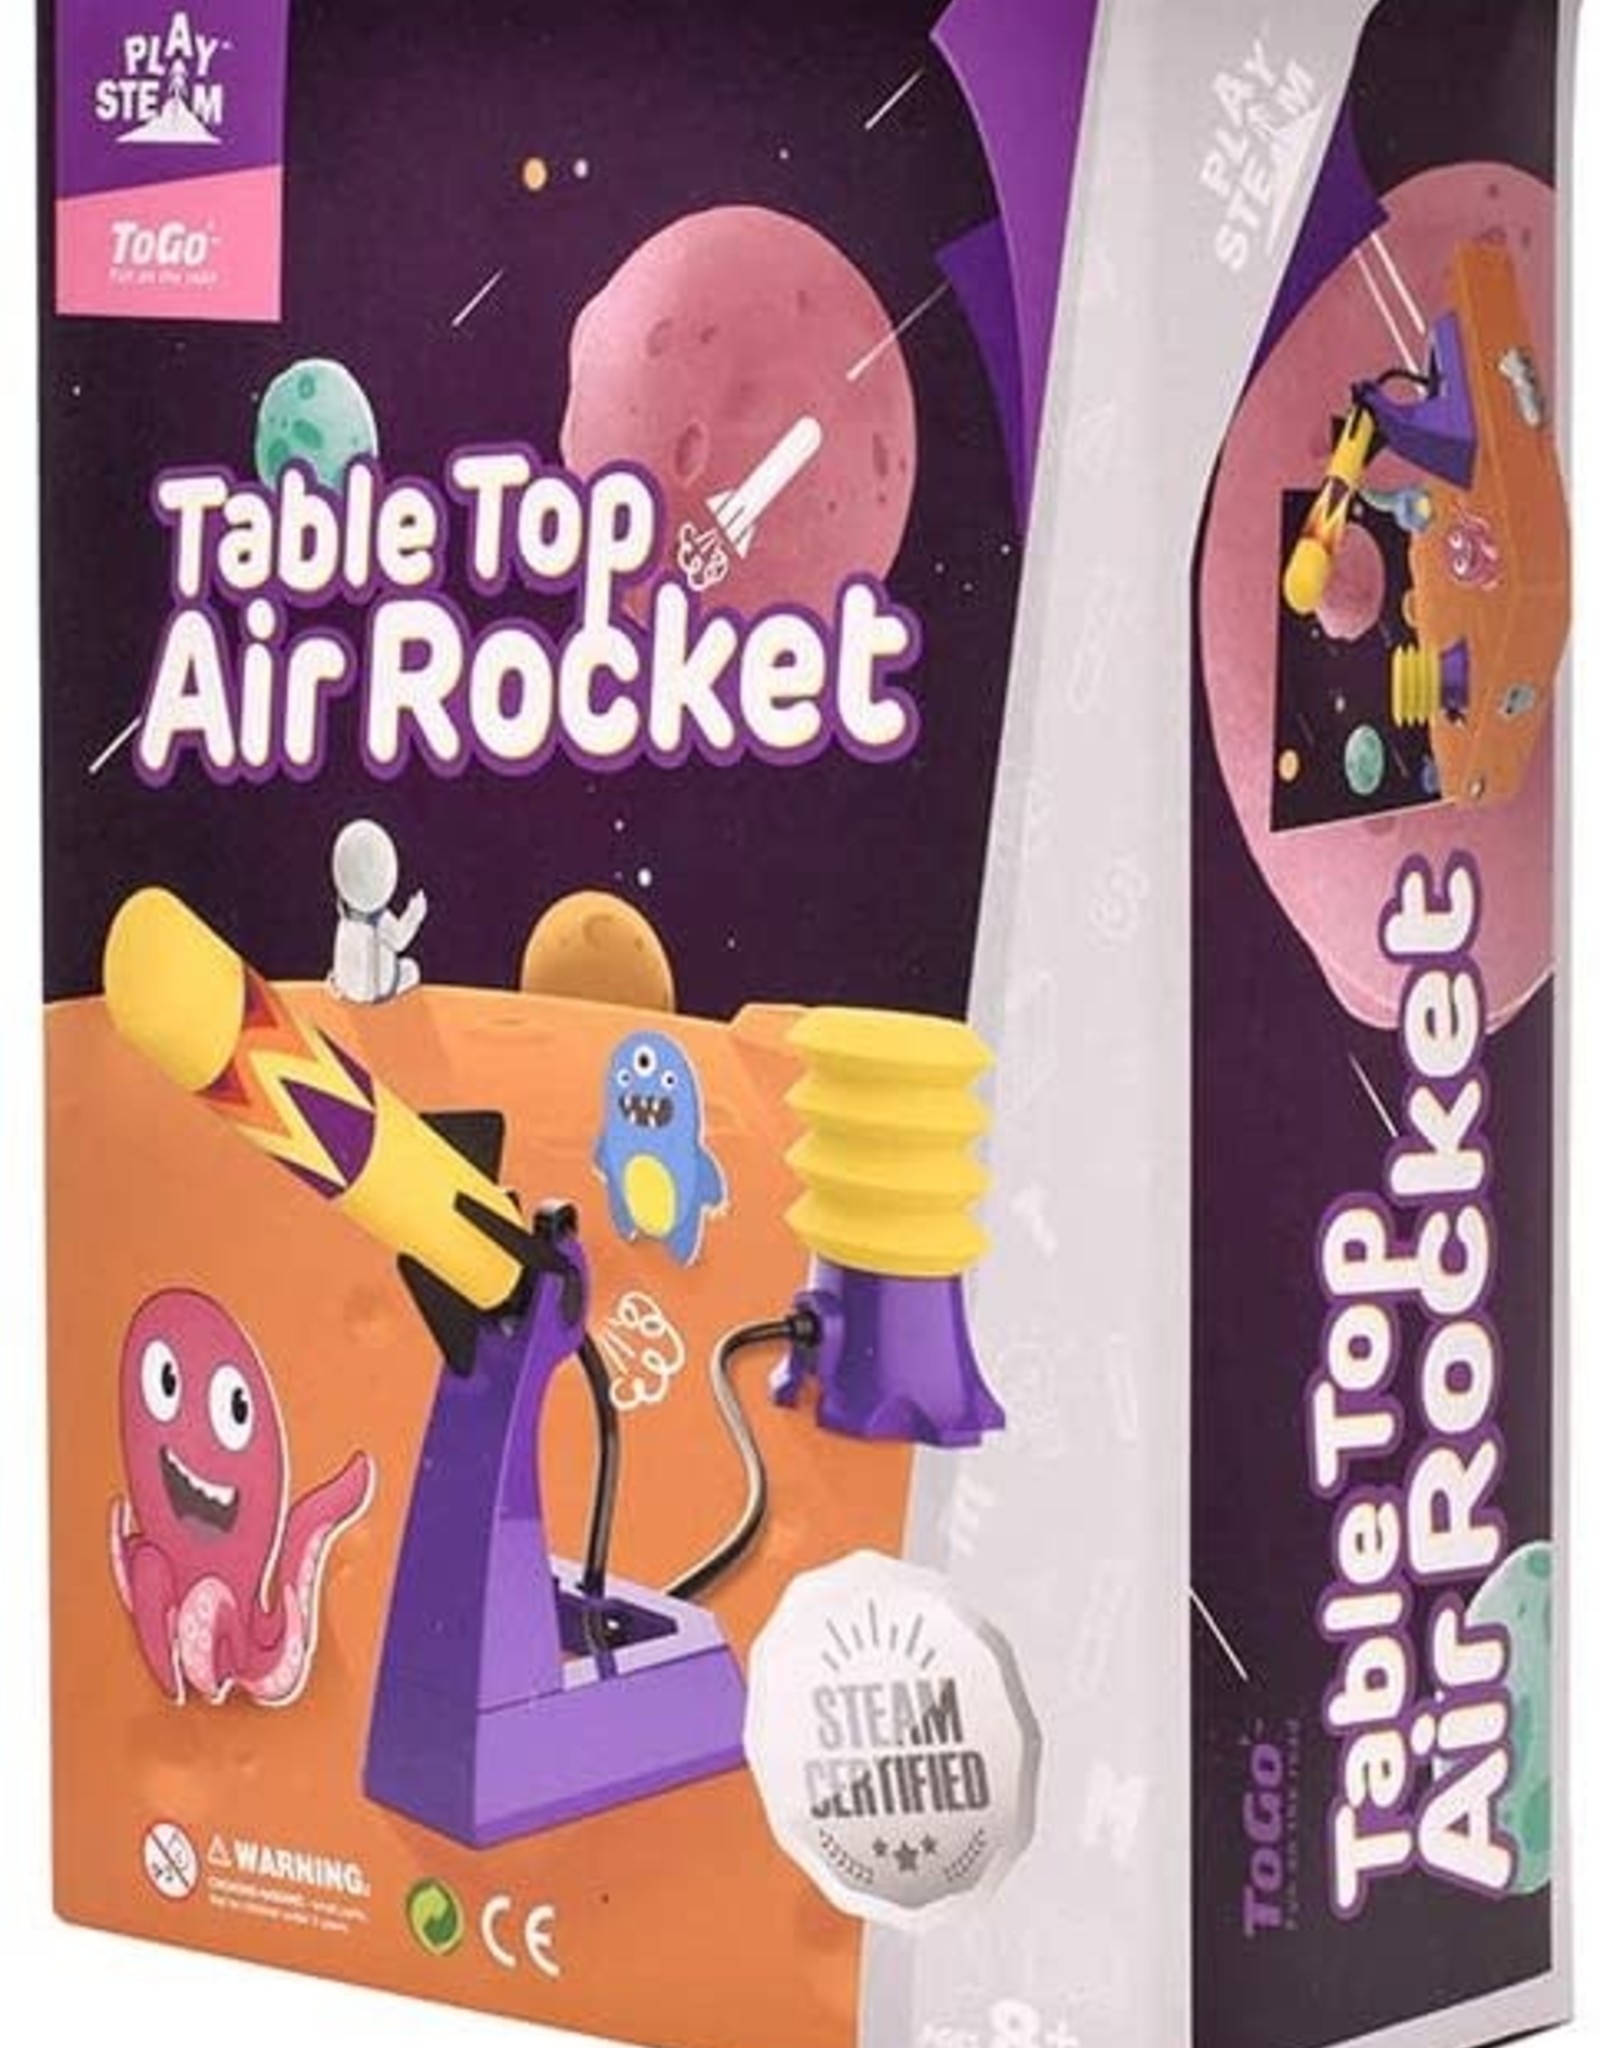 Play Steam Table Top Air Rocket